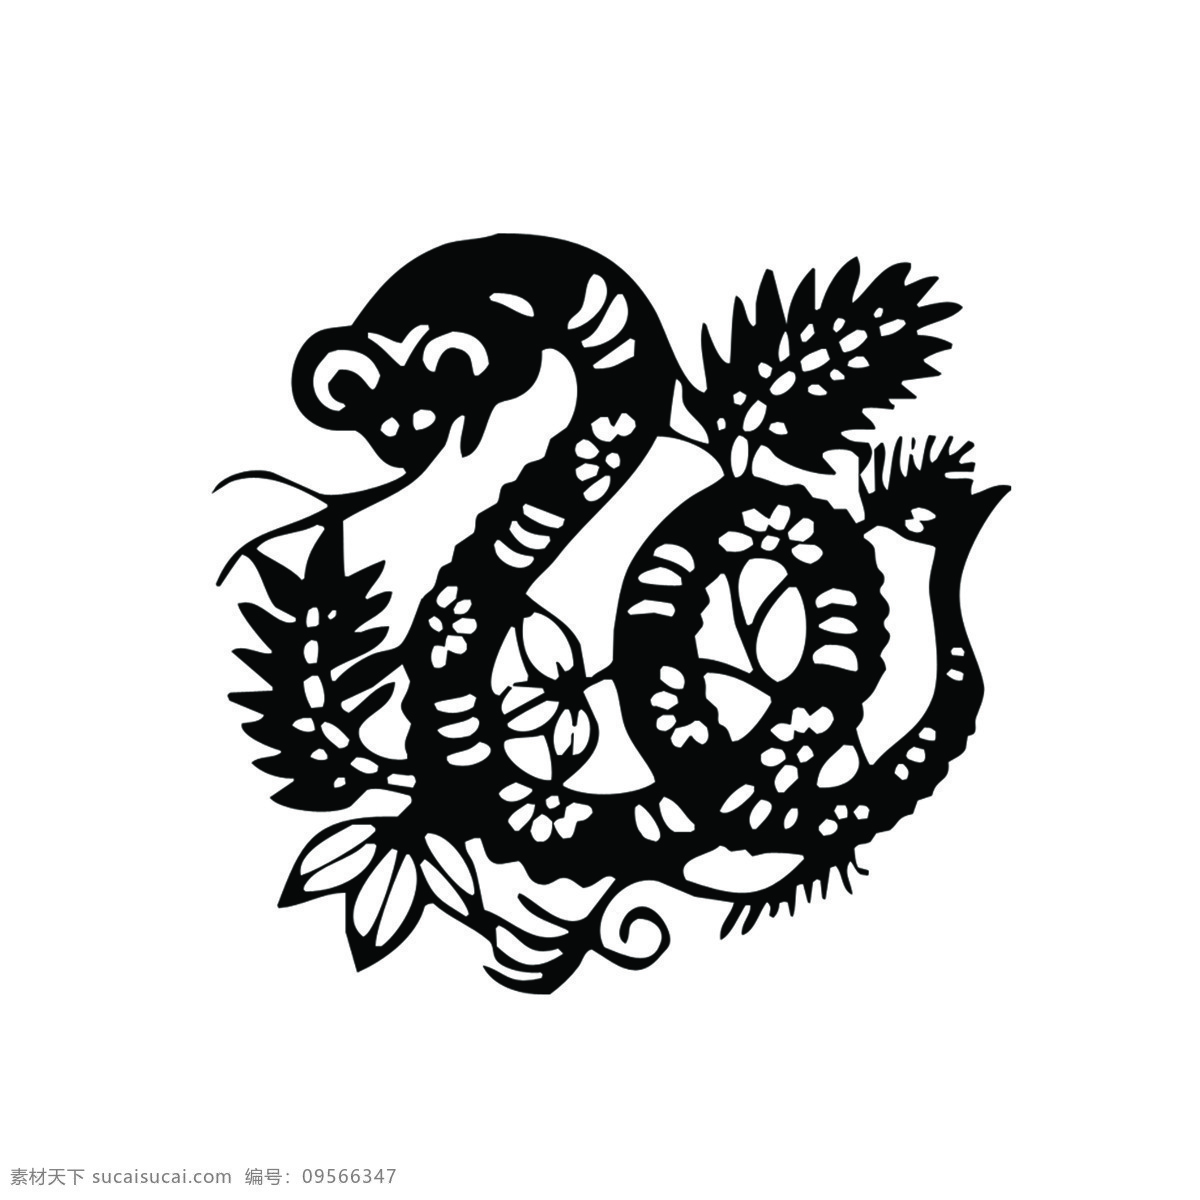 蛇形 剪纸 蛇 剪纸蛇 黑色印花蛇 新年素材 窗花 剪纸艺术 节日庆典 生活百科